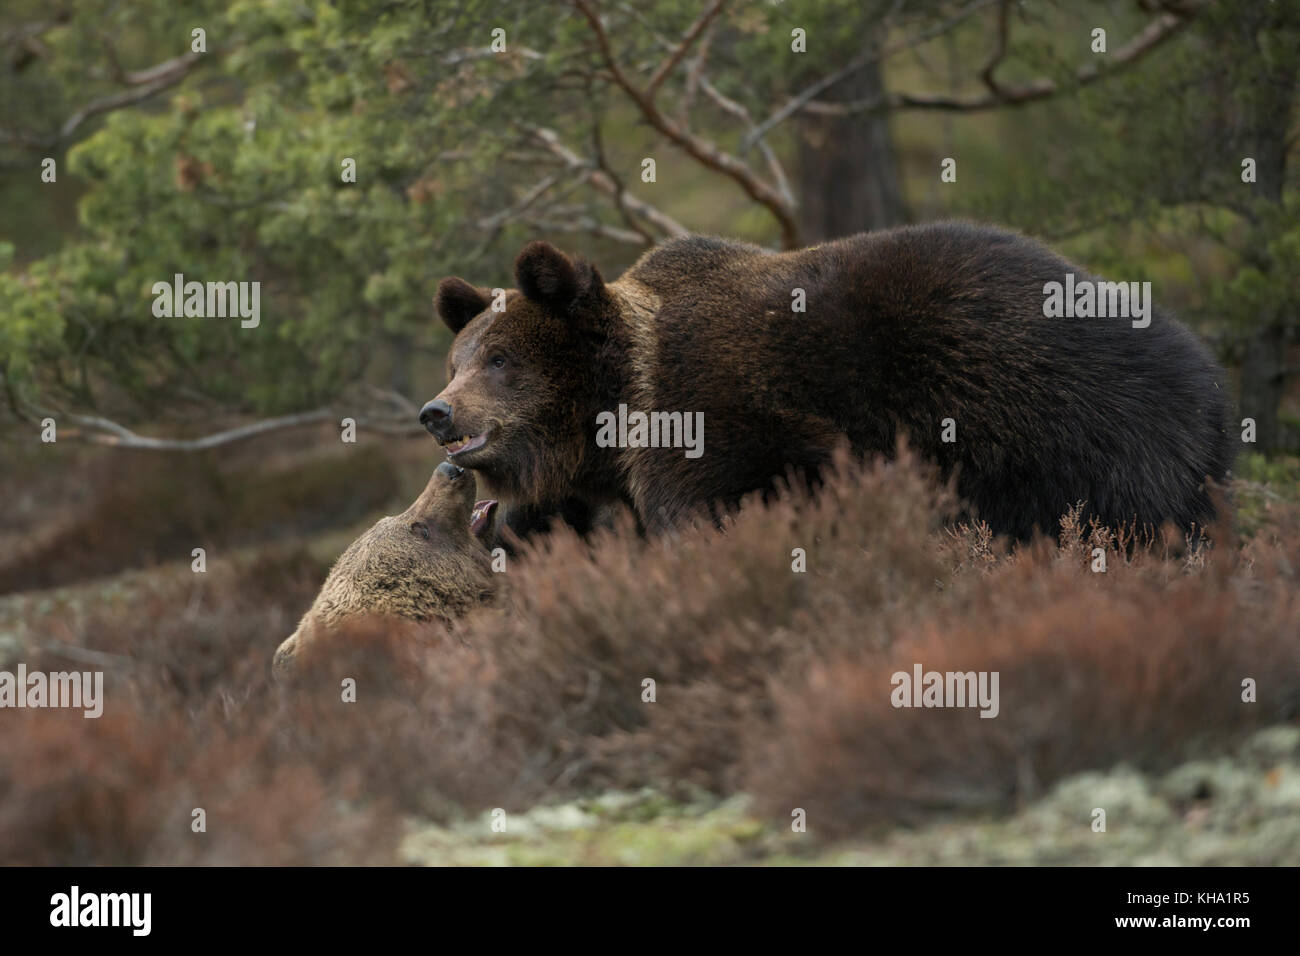 Eurasian Brown Bears / Europaeische Braunbaeren ( Ursus arctos ) lucha, lucha, en lucha, en el arbustos de un claro en un bosque, Europa. Foto de stock